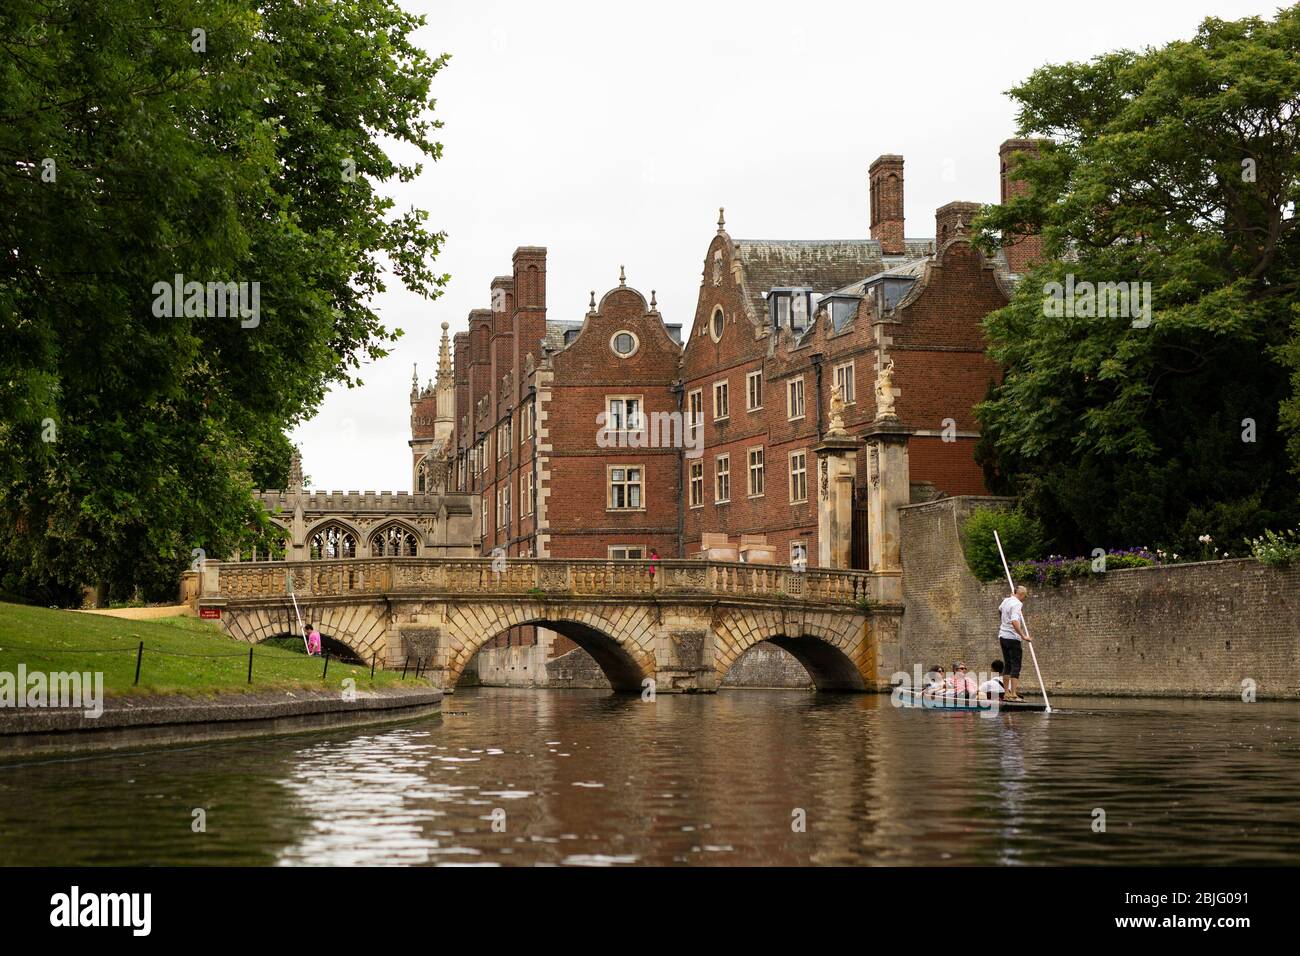 Auf dem Cam River an der Kitchen Bridge und der Bridge of Seufzer am St John's College in Cambridge, England, Großbritannien. Stockfoto